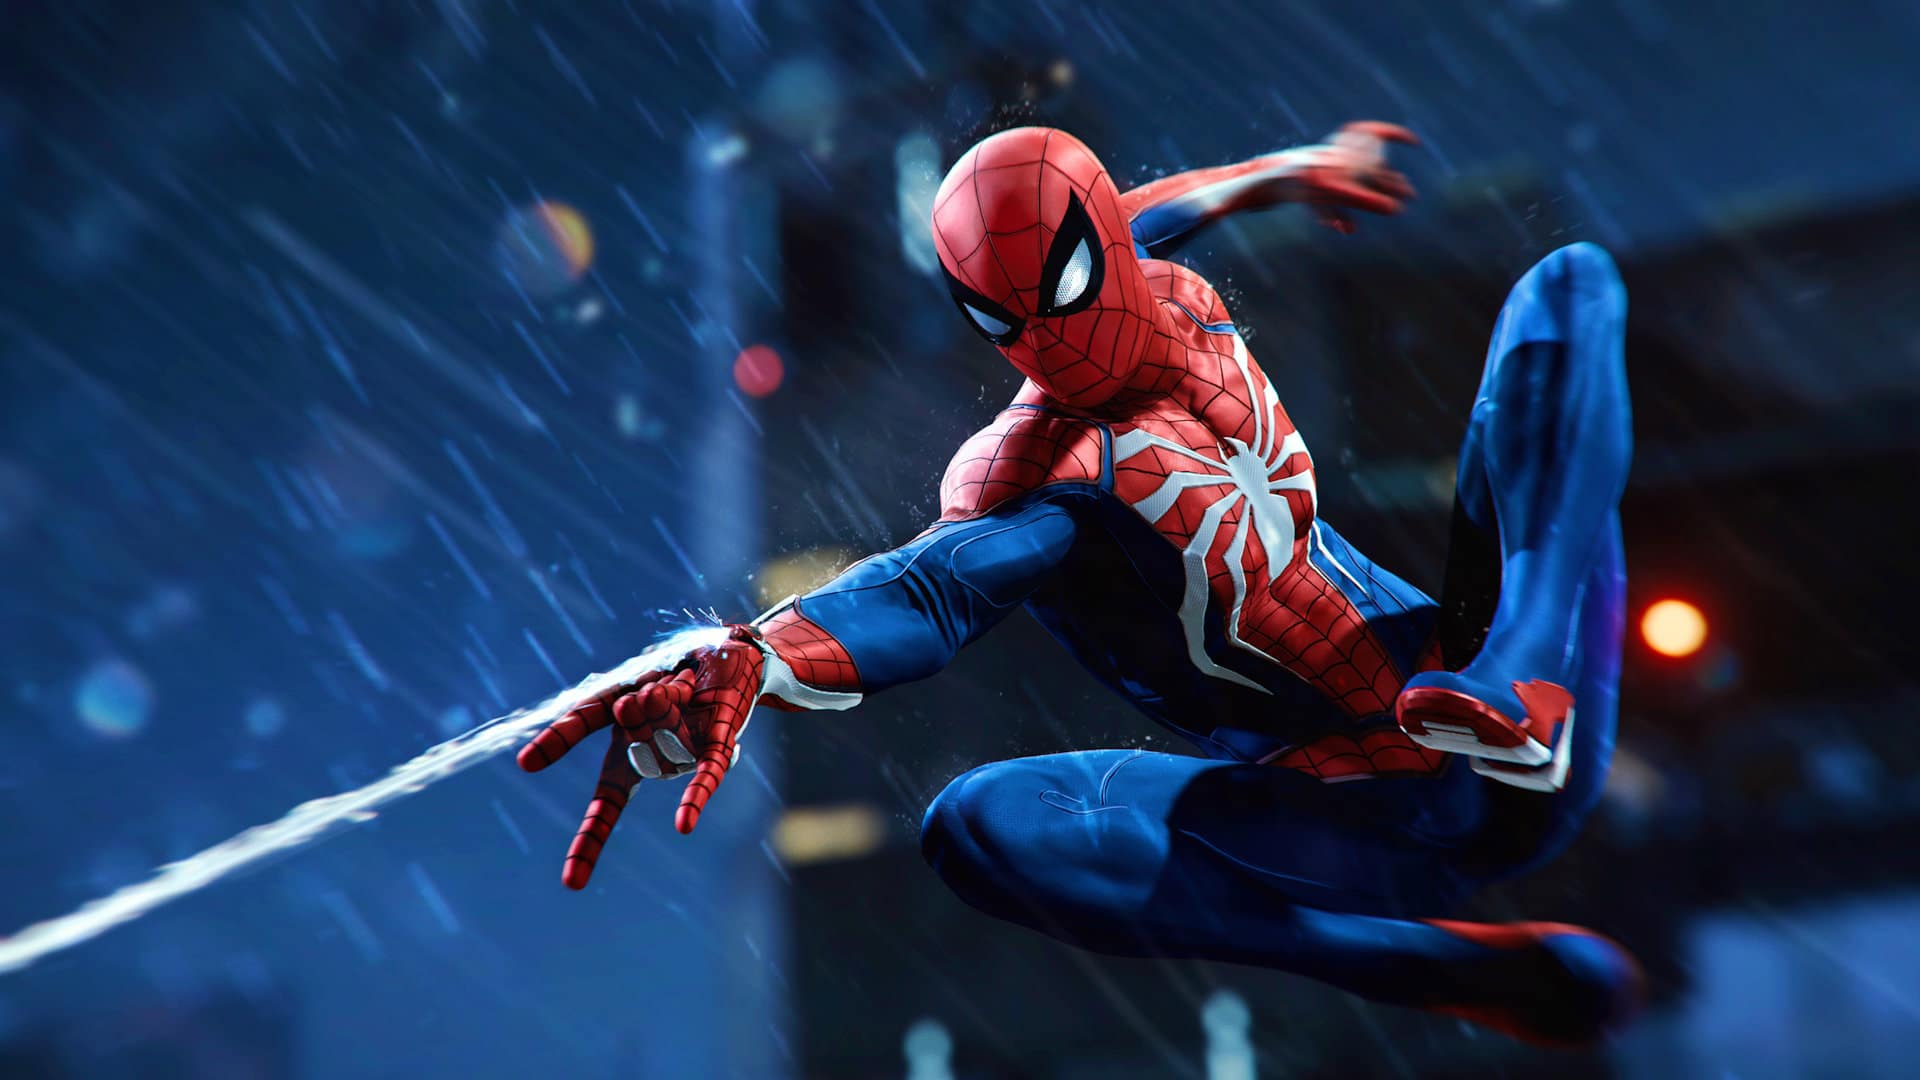 Immagine di Marvel's Spider-Man si aggiornerà con il nuovo DLSS 3 su PC, ottenendo performance inimmaginabili con le GPU attuali